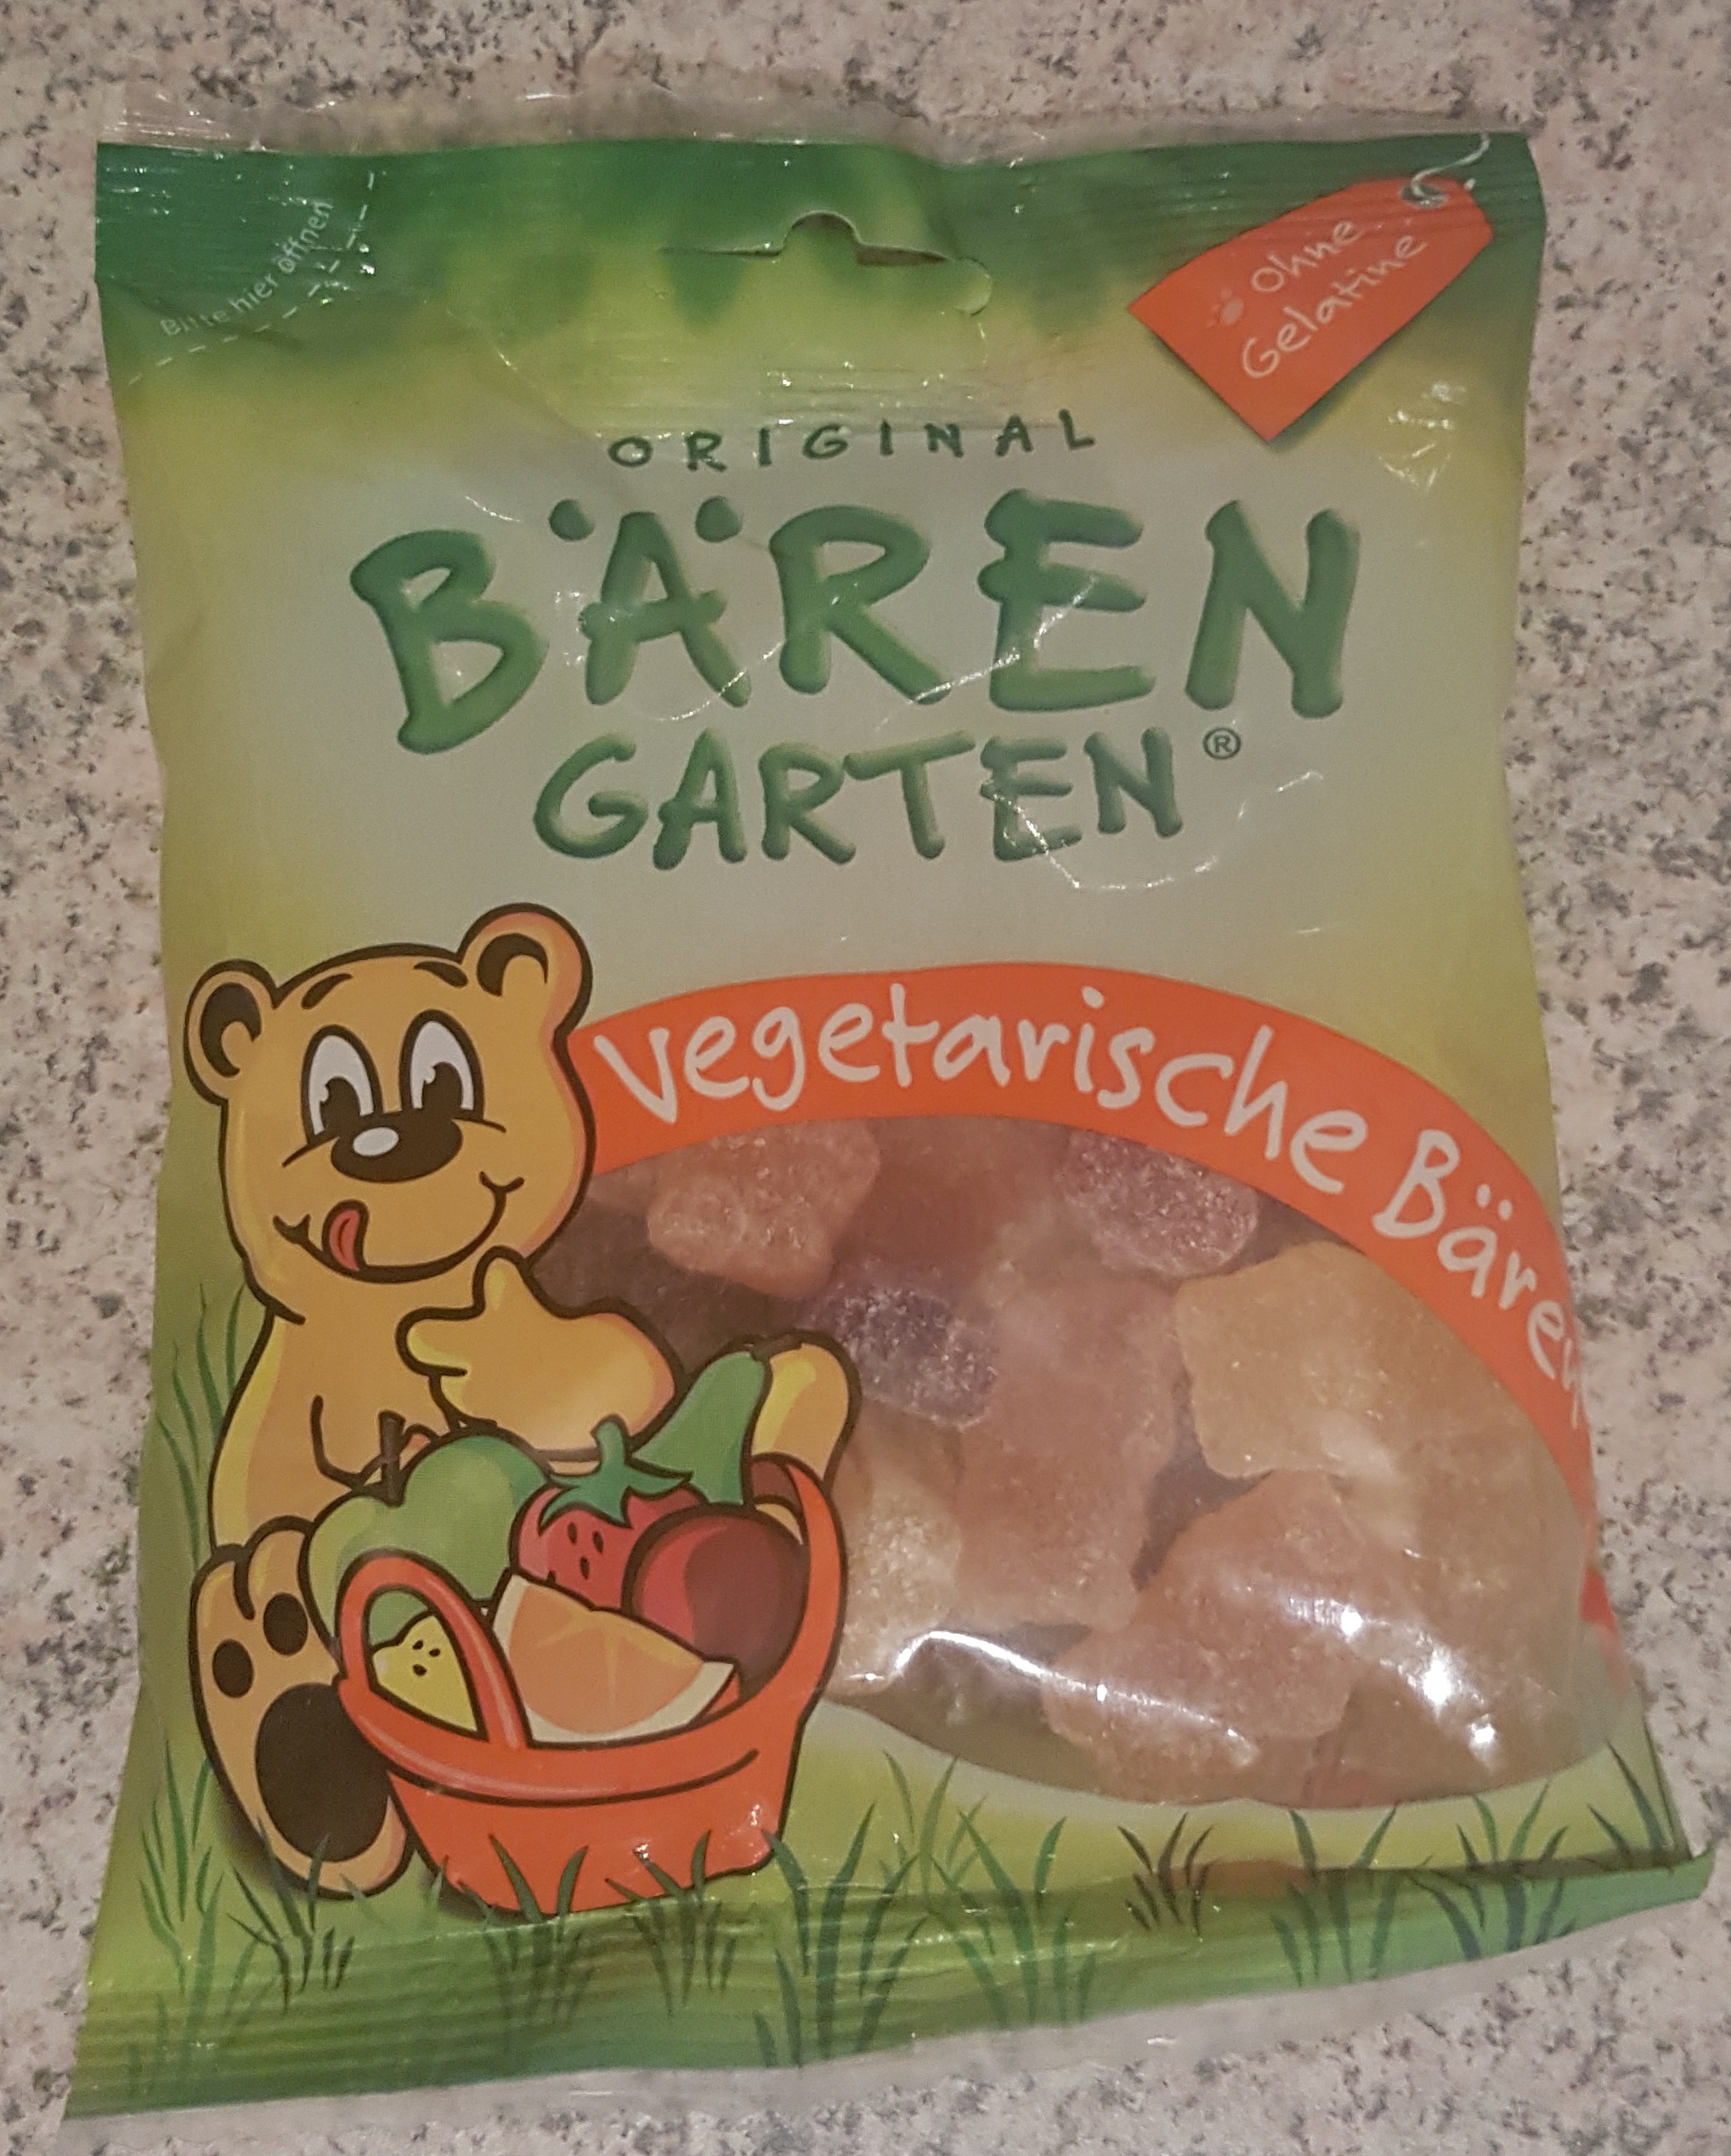 dr-c-soldan-original-baerengarten-vegetarische-baeren